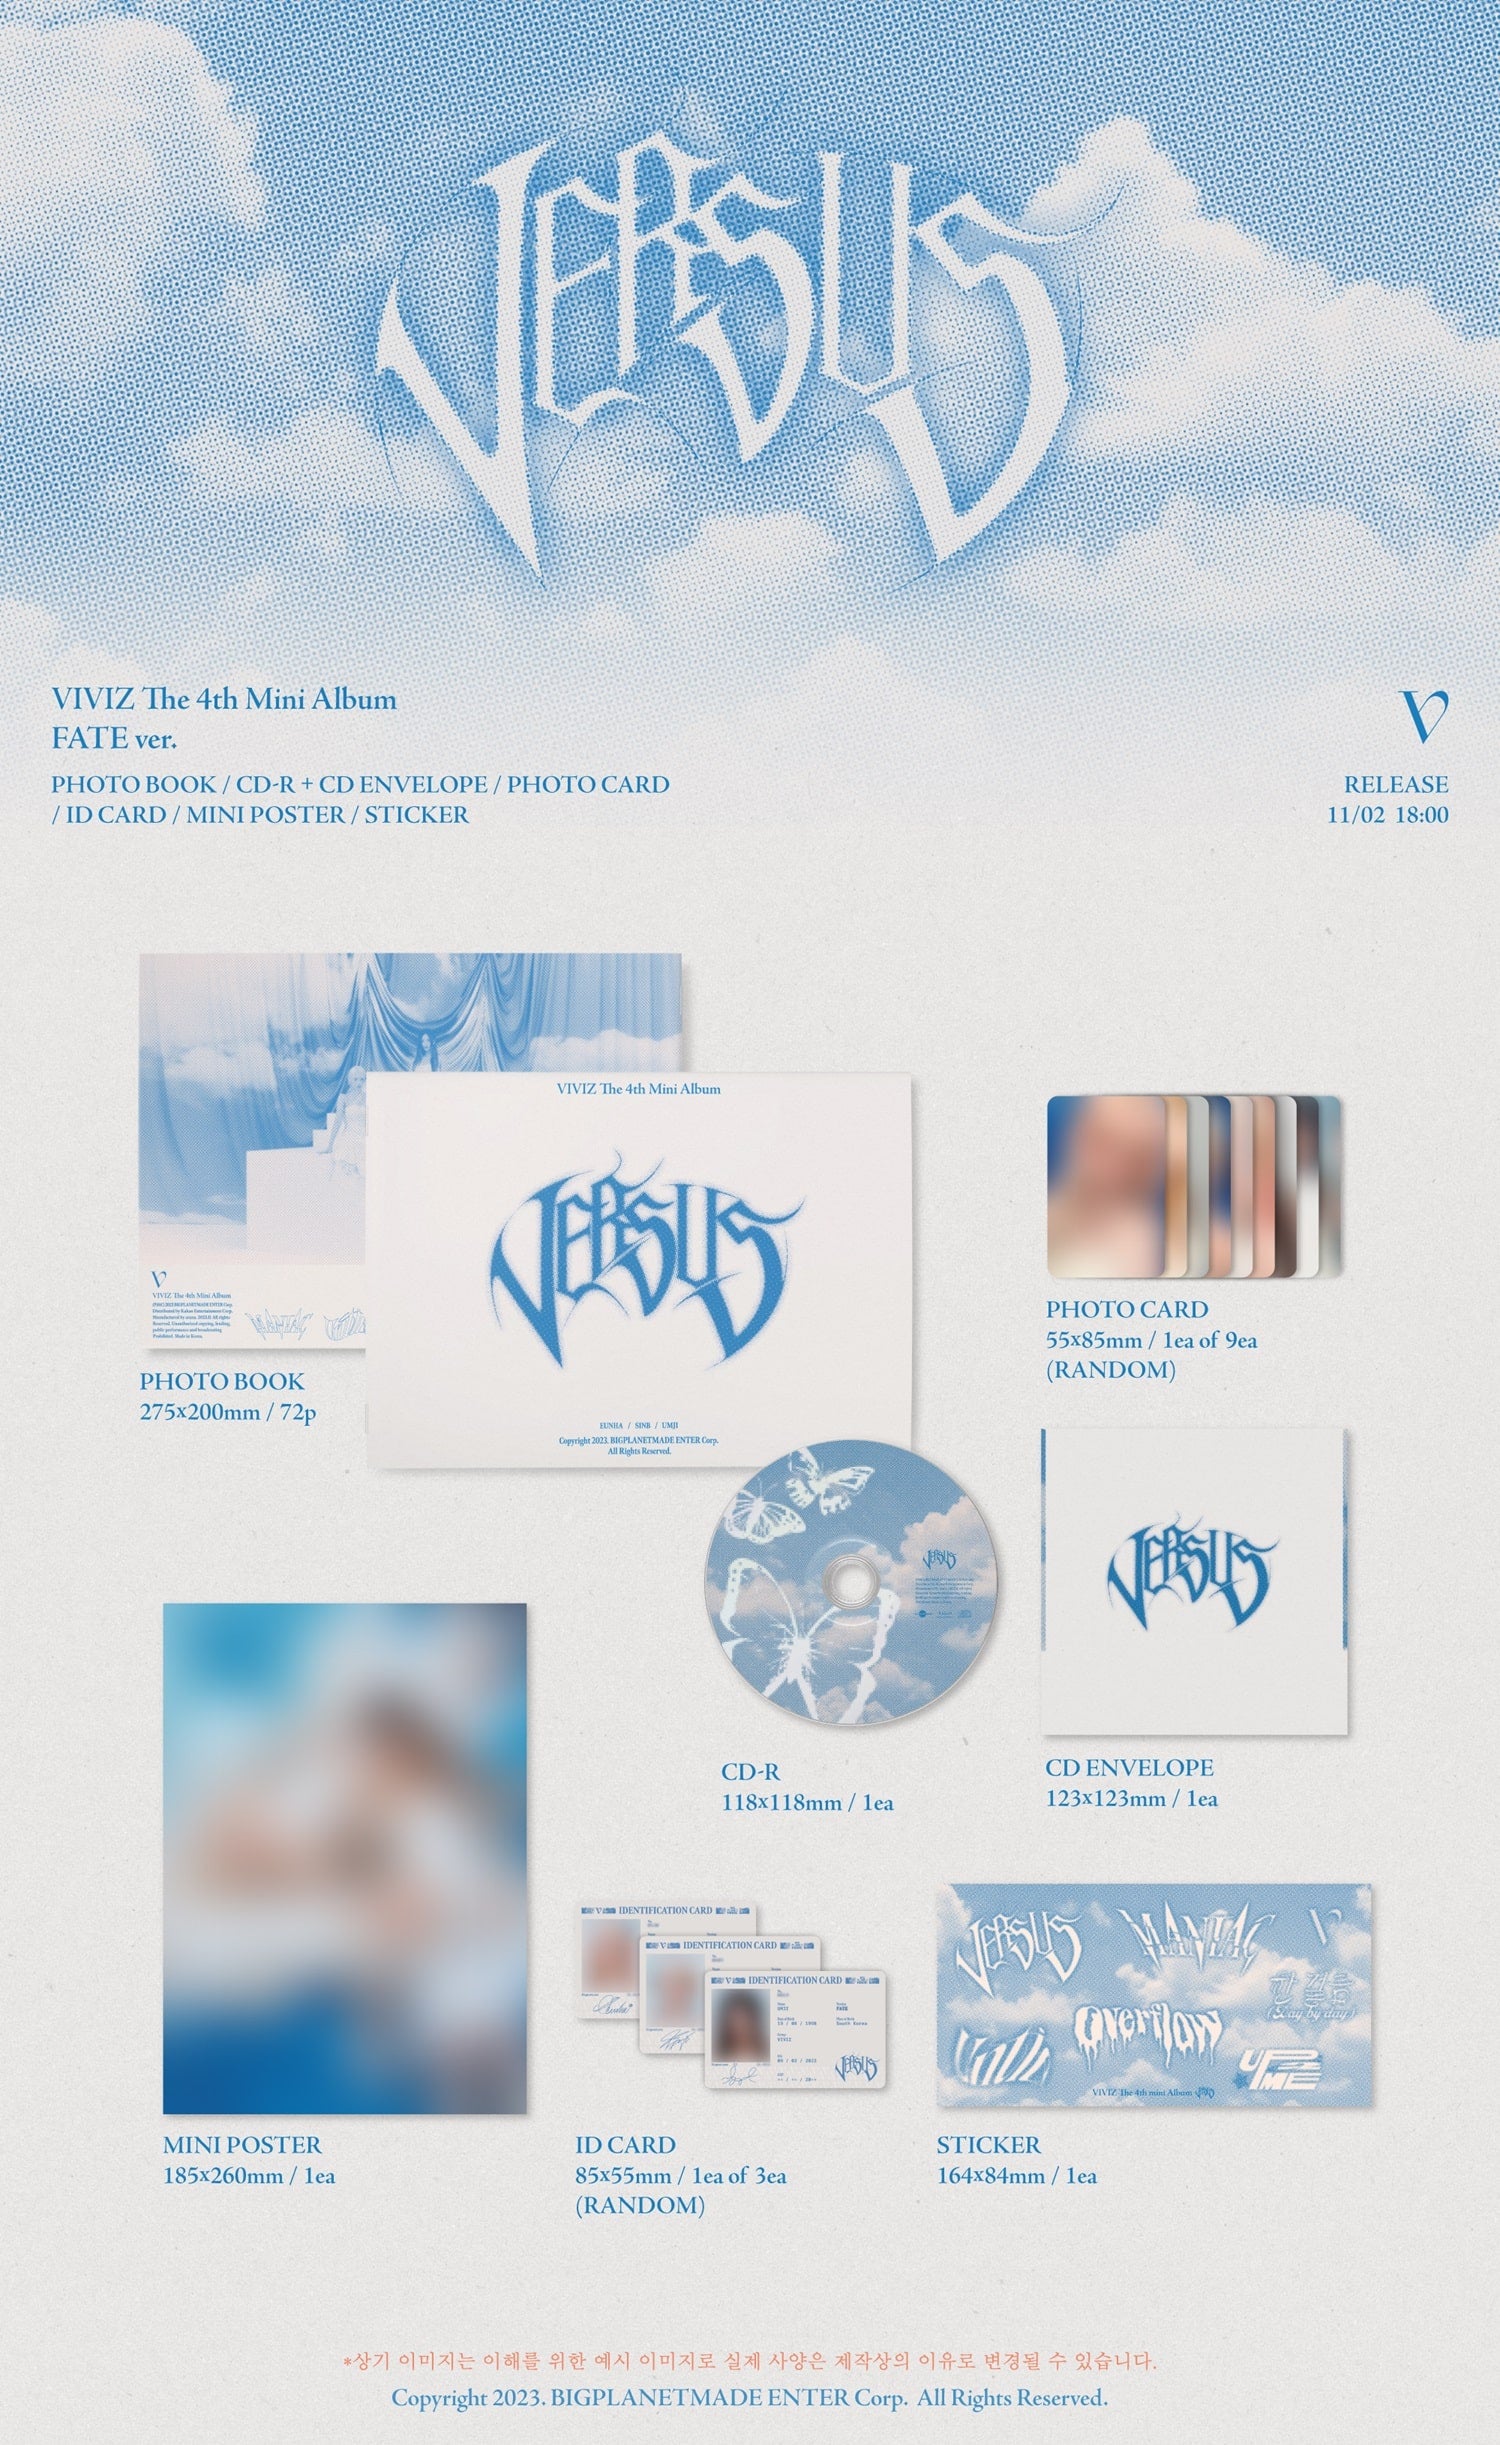 VIVIZ 4th Mini Album VERSUS